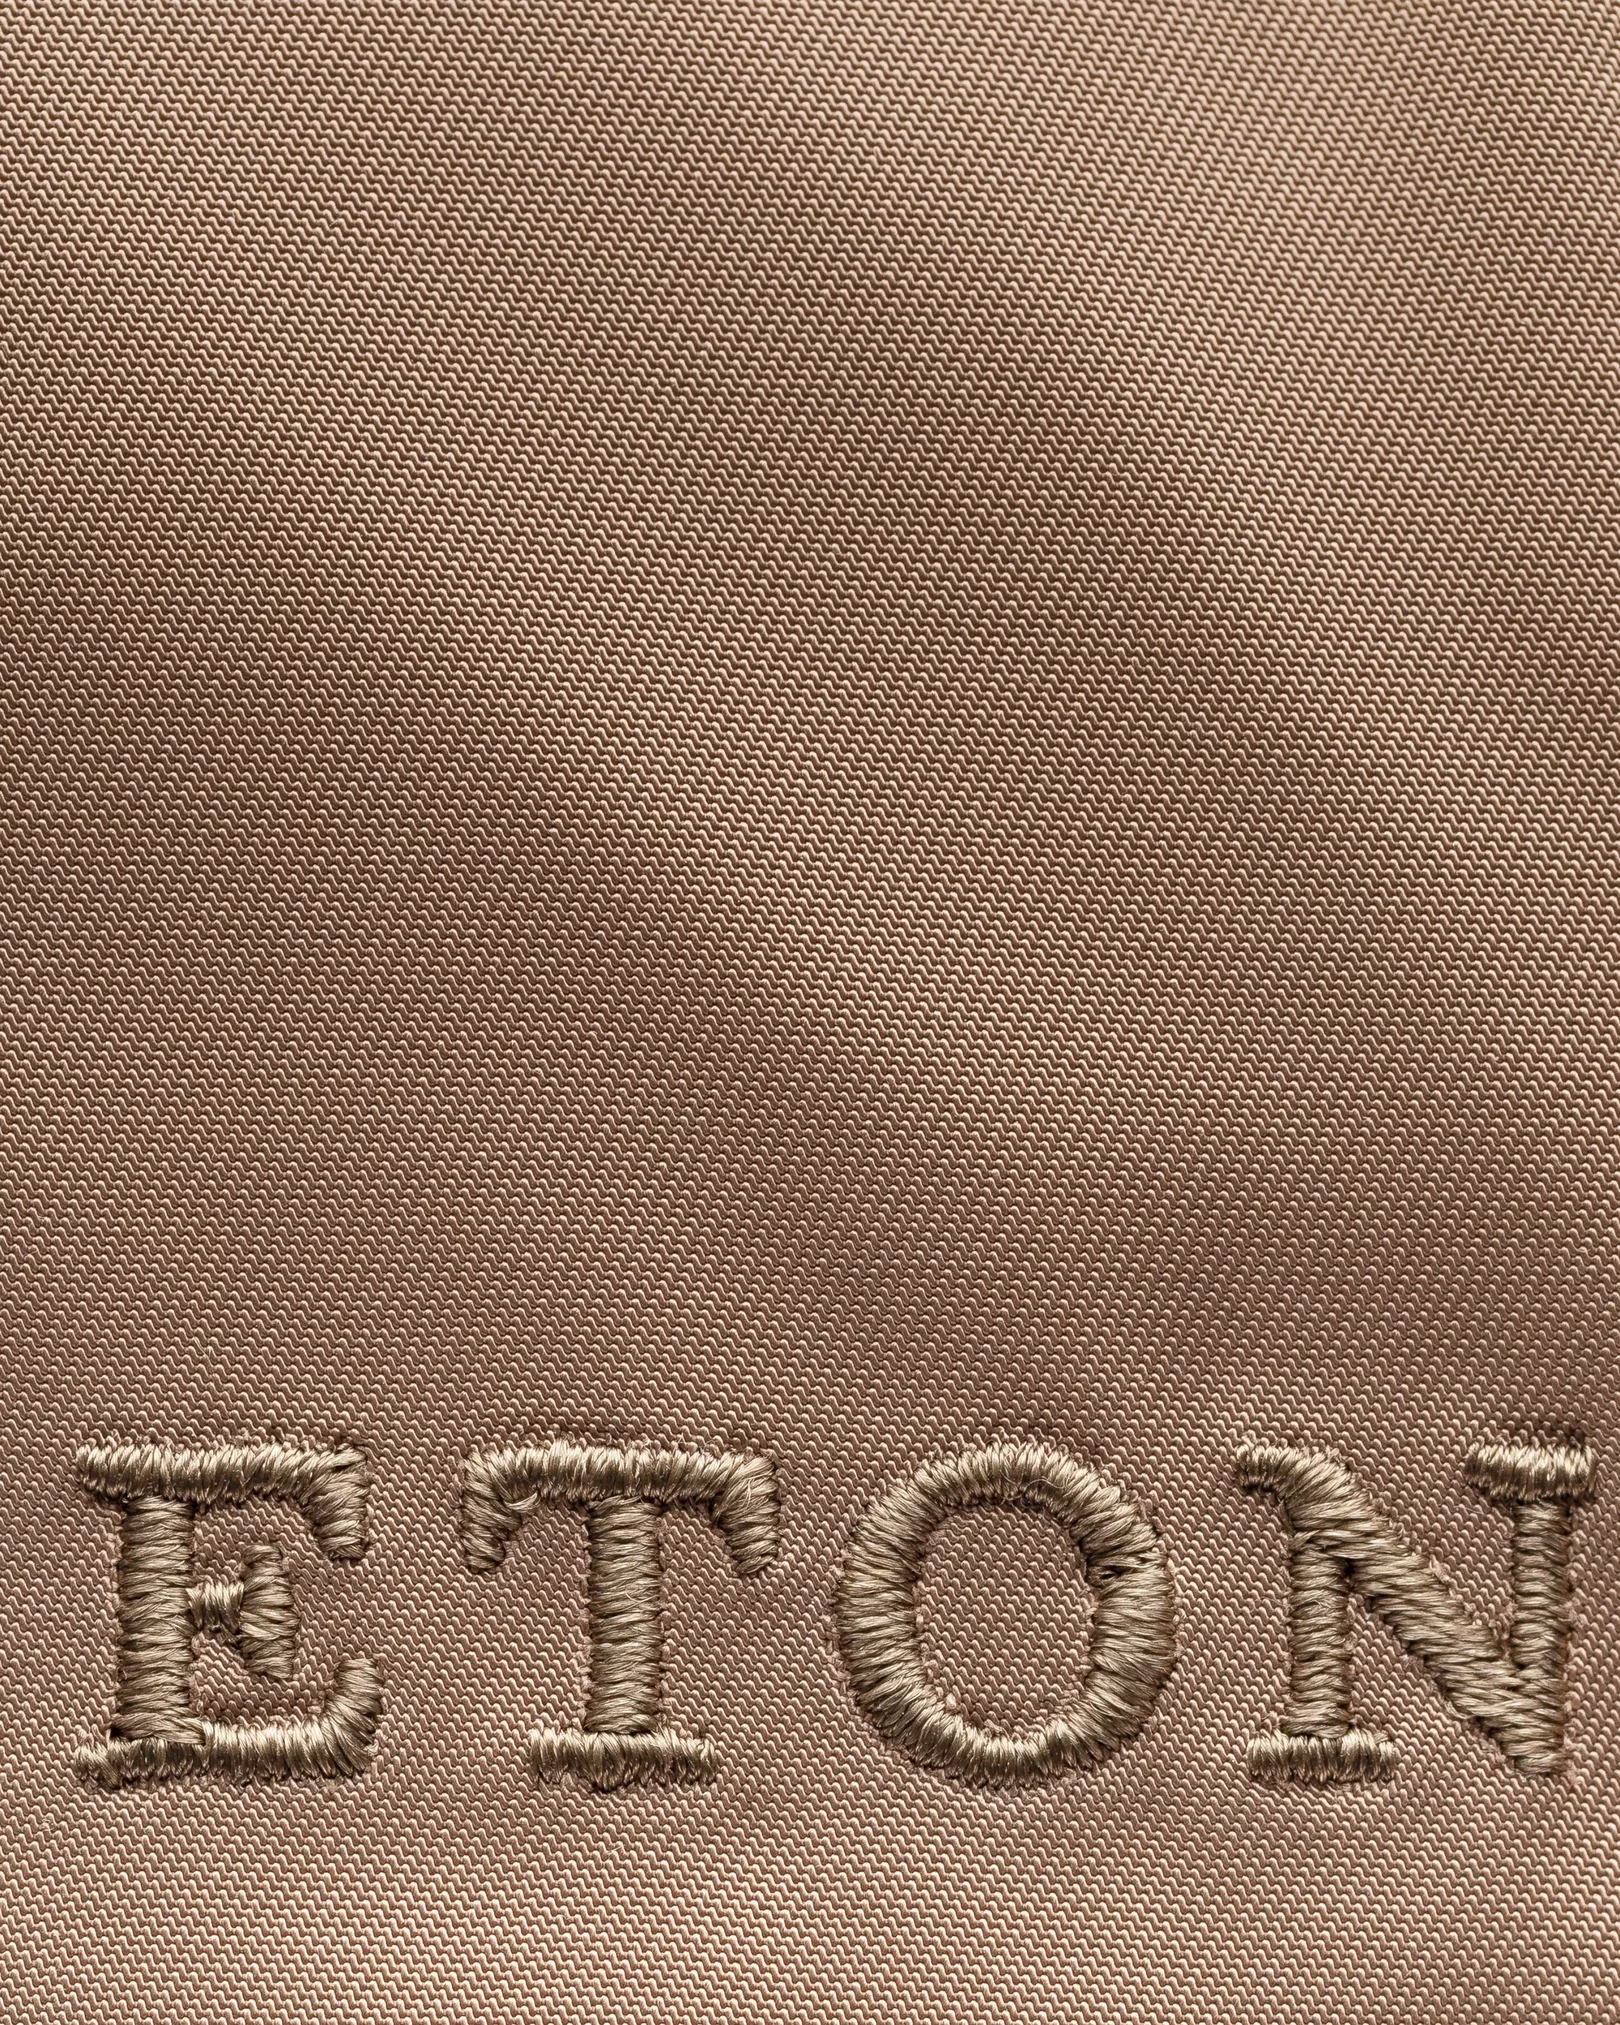 Eton - green nylon cap